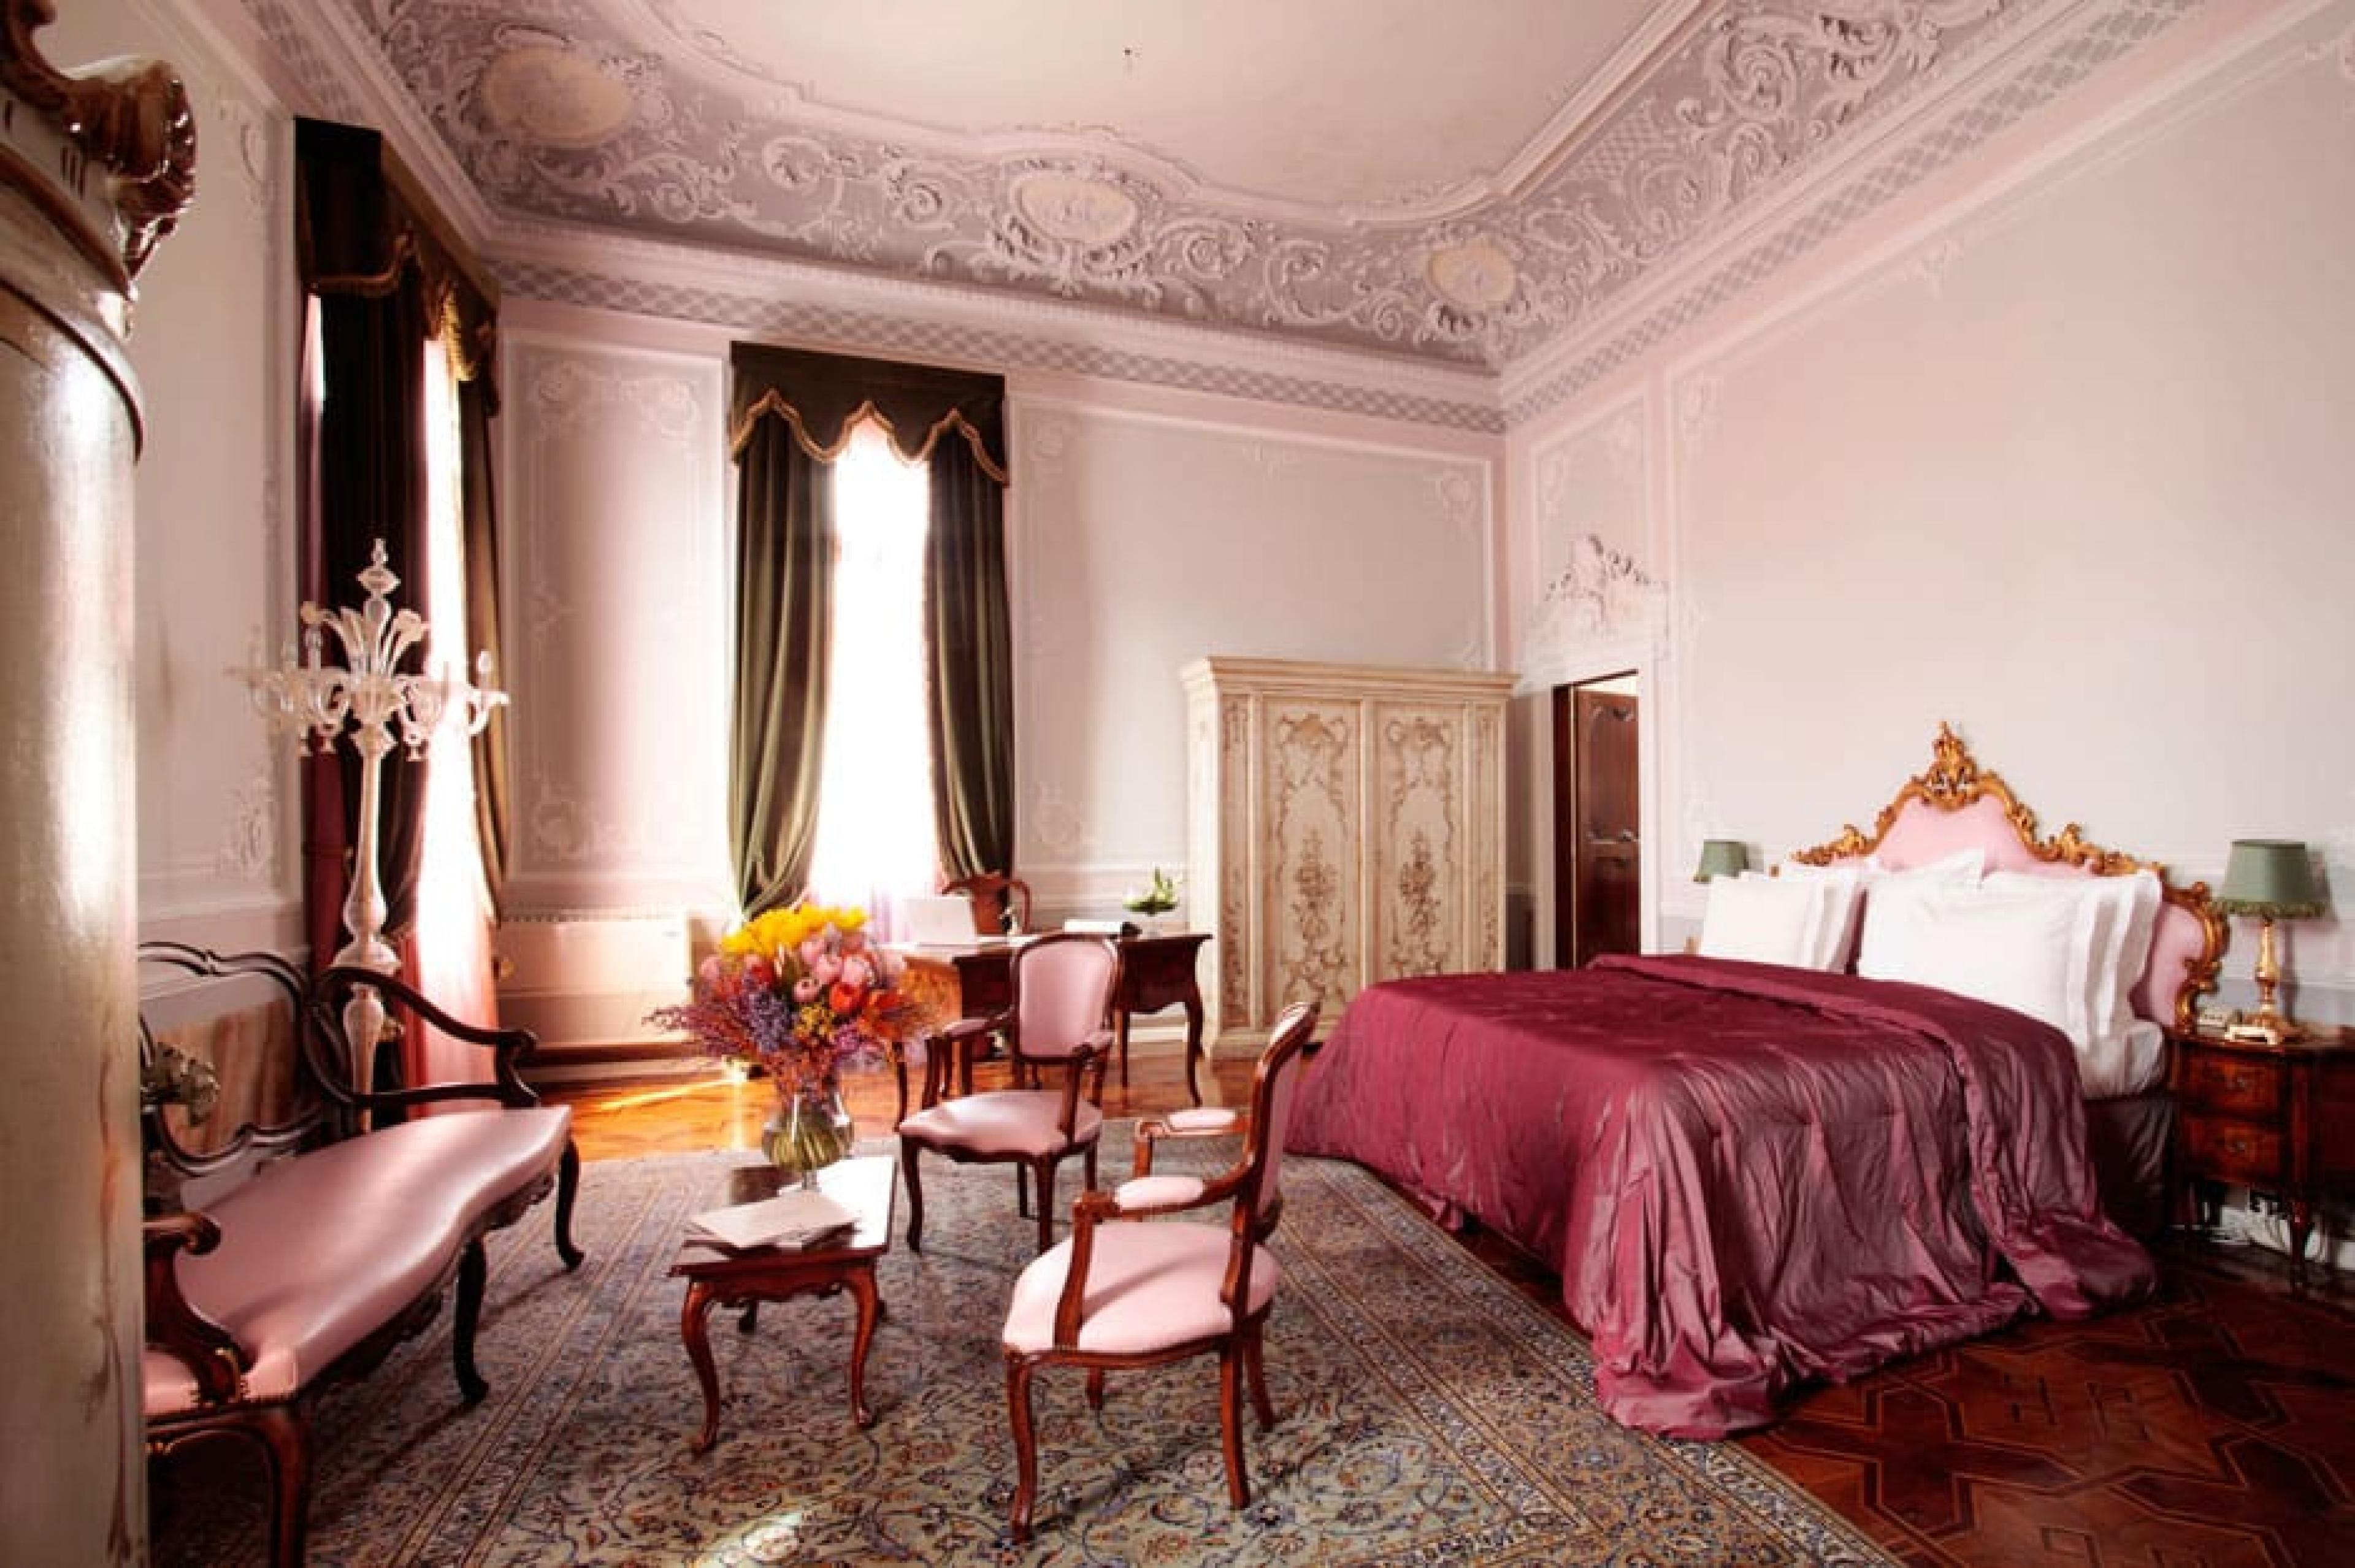 Junior suite at Boscolo Venezia, Venice, Italy